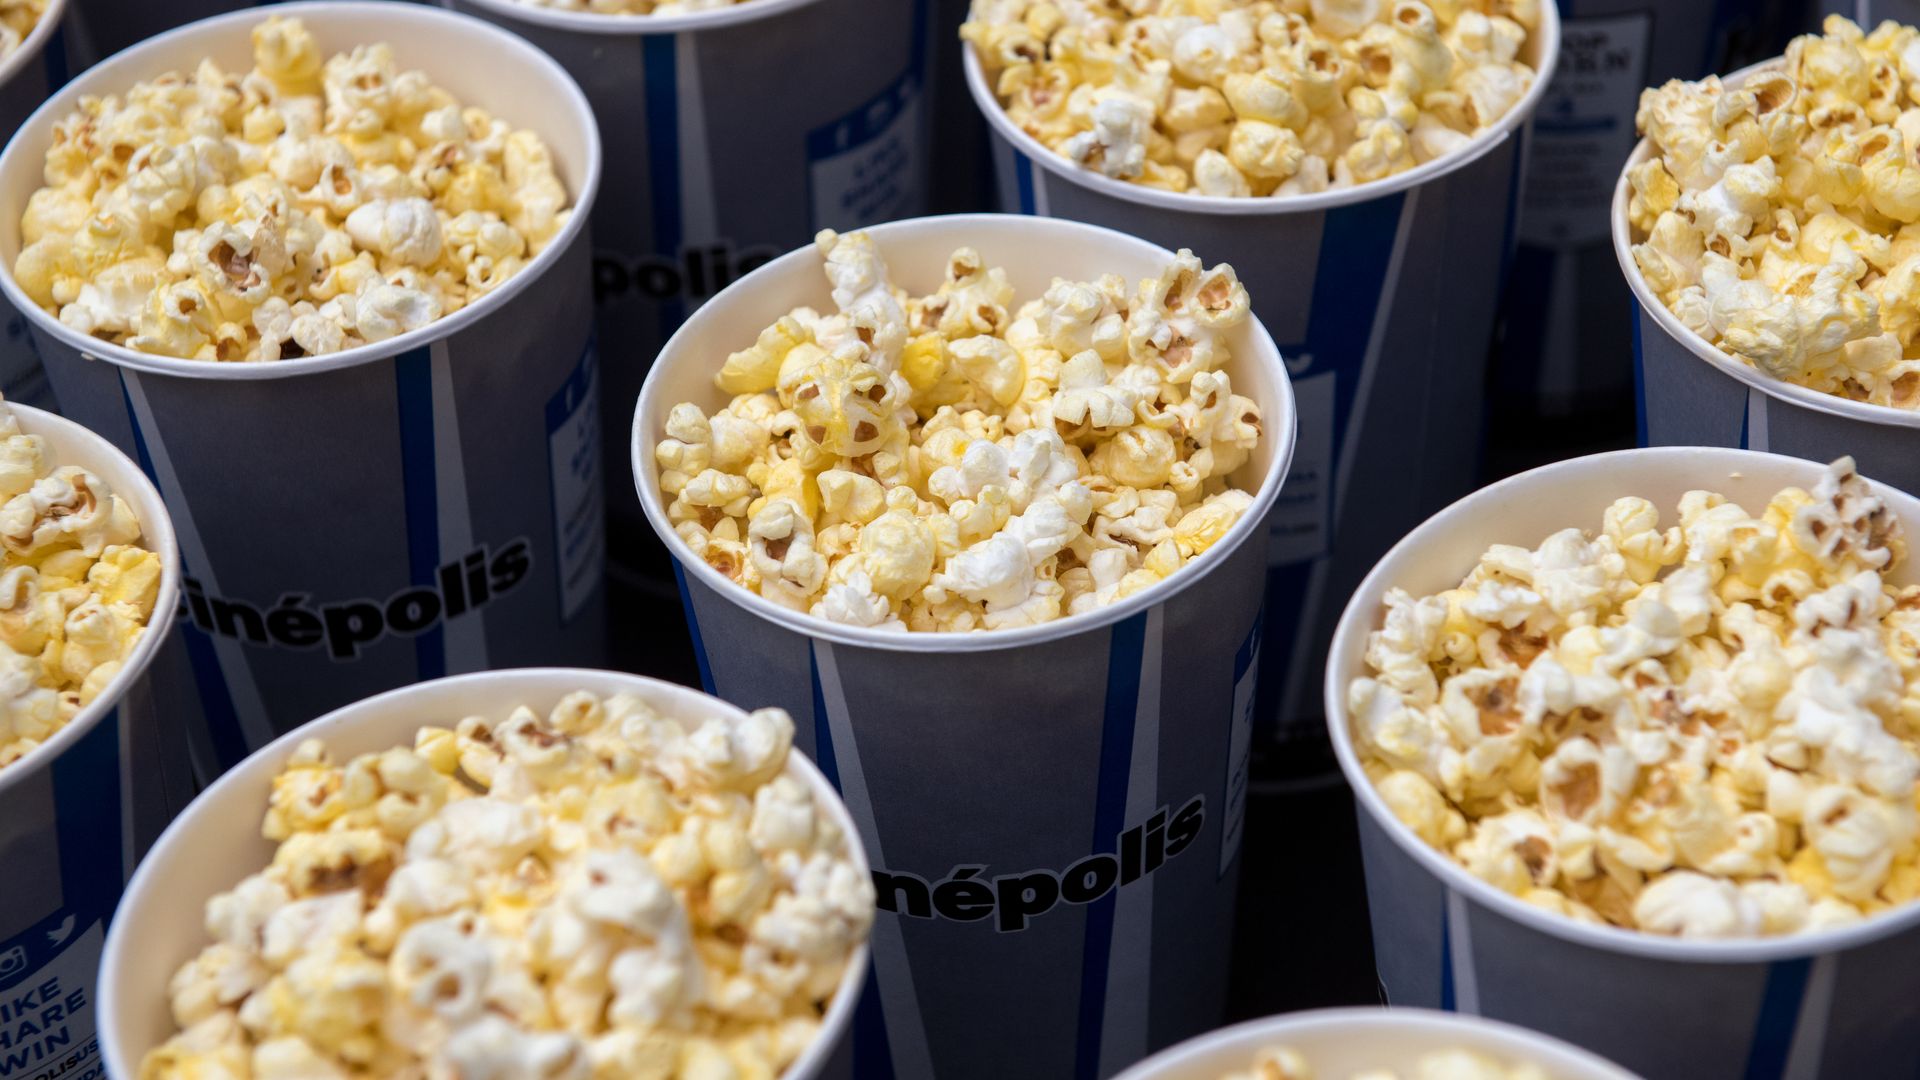 Buckets of movie theater popcorn.